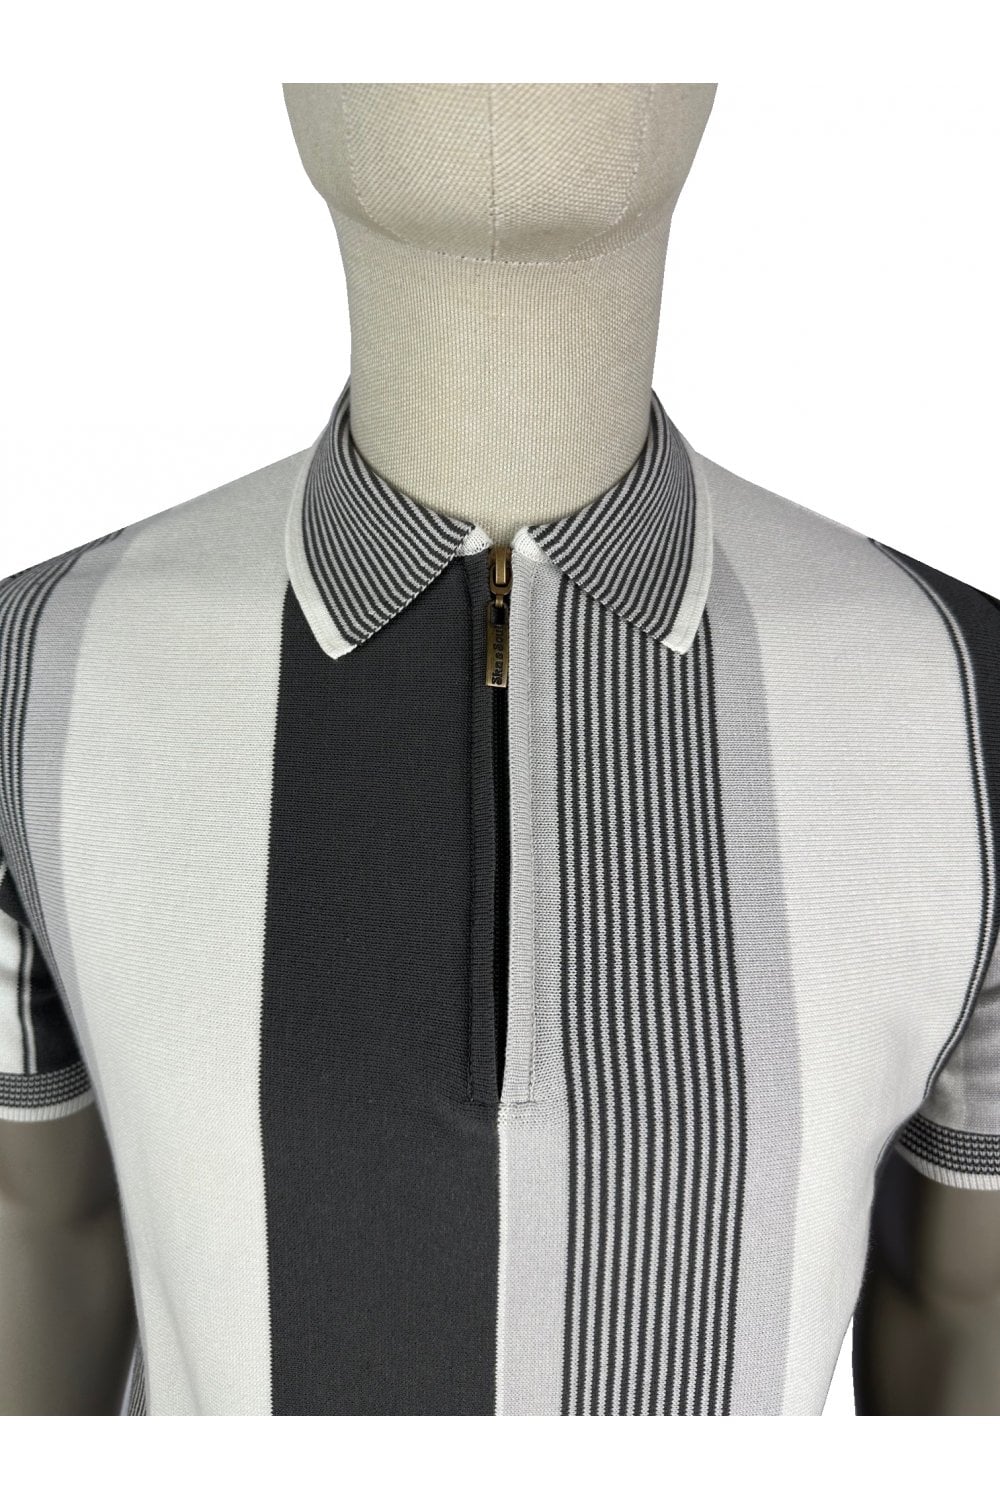 Ska & Soul Men's SS2541 Mixed Stripe Fine Gauge Zip Polo Shirt Mono Black White